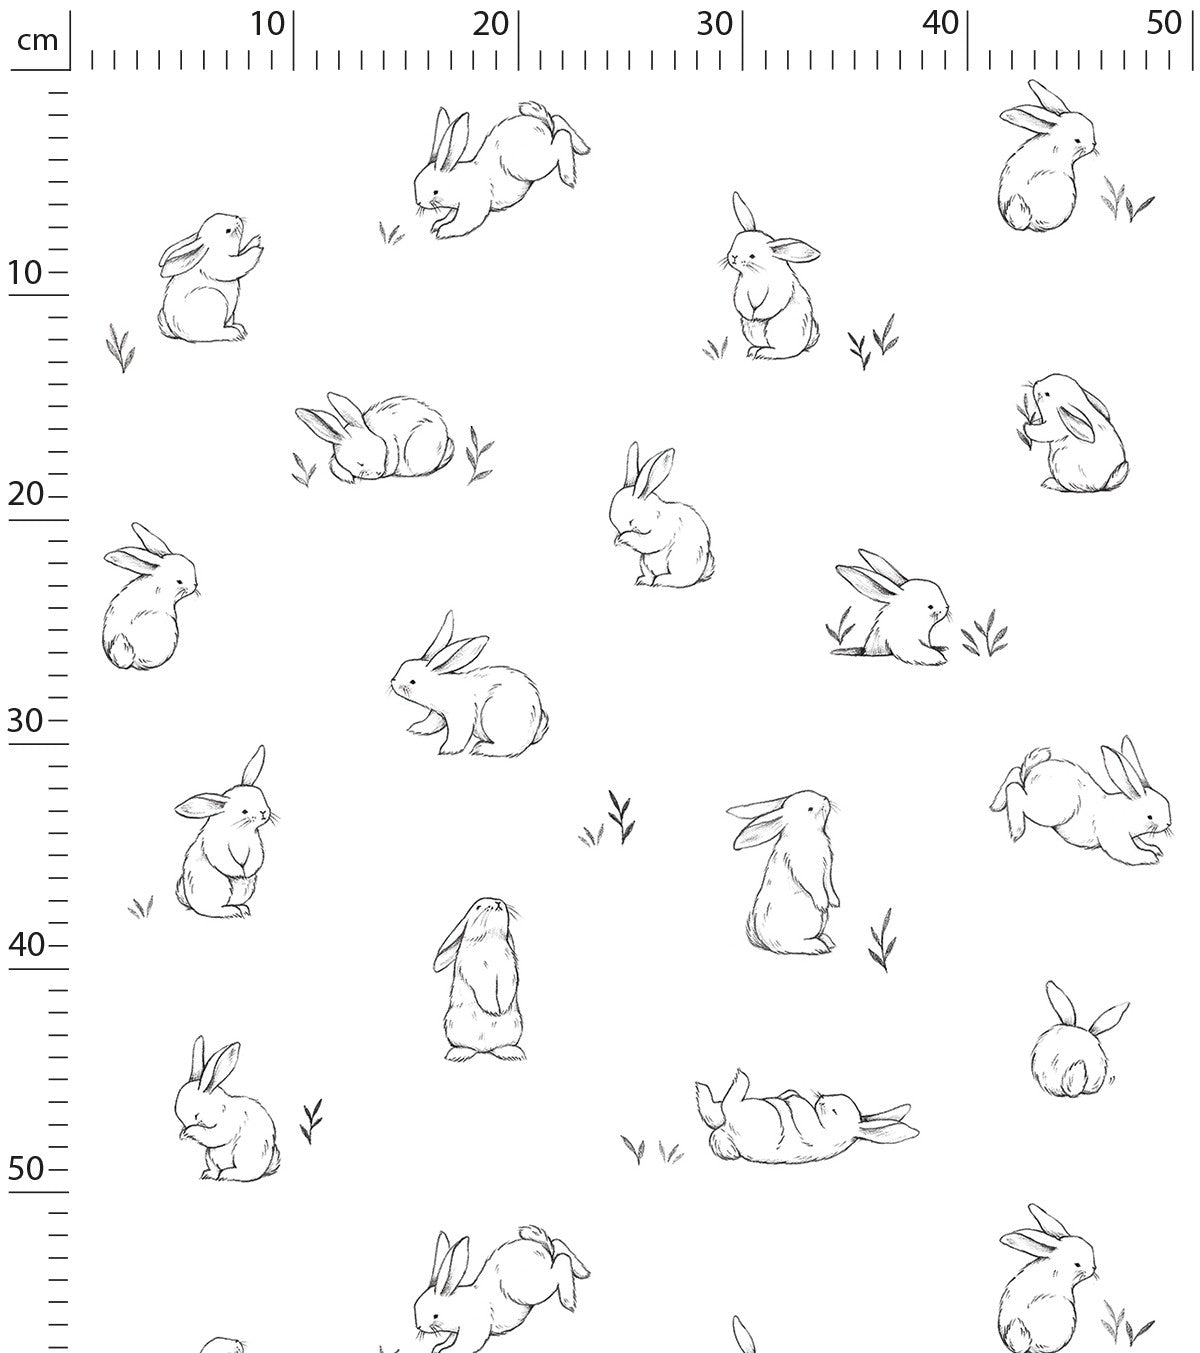 BUNNY - Children's wallpaper - Bunny motif